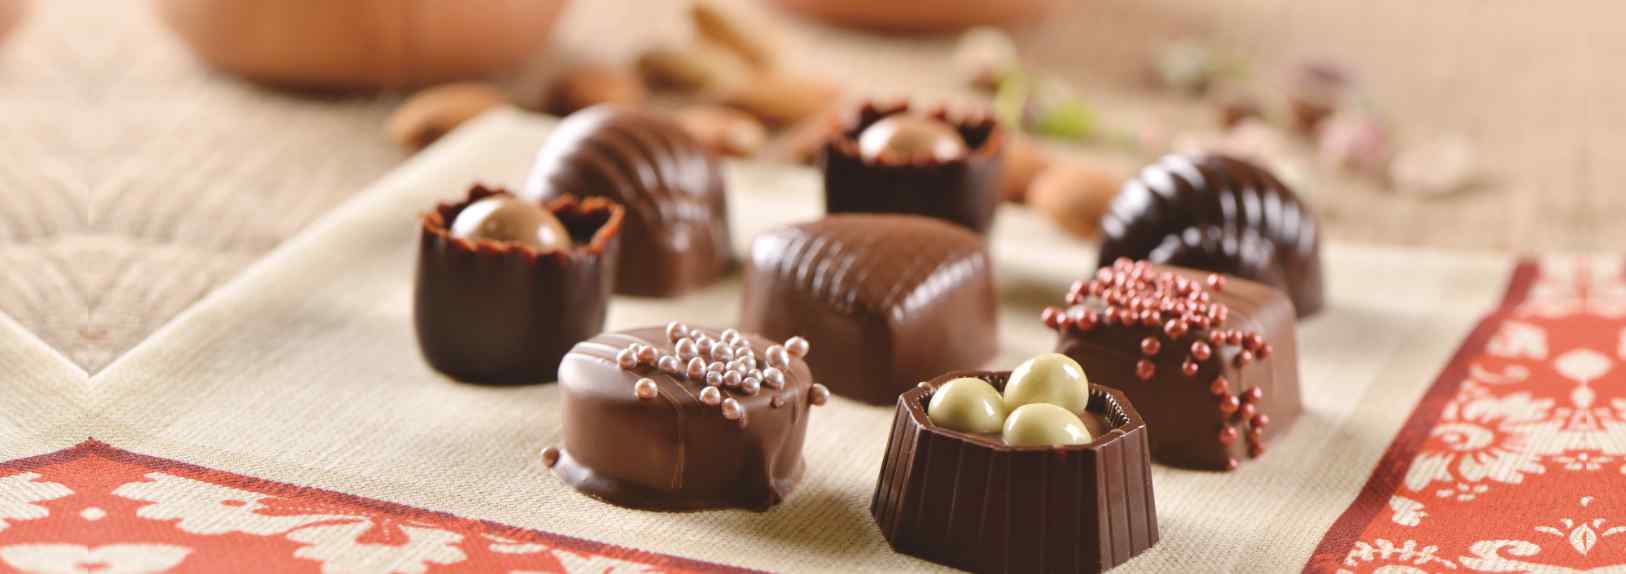 Çikolata çeşitleri | Nuga